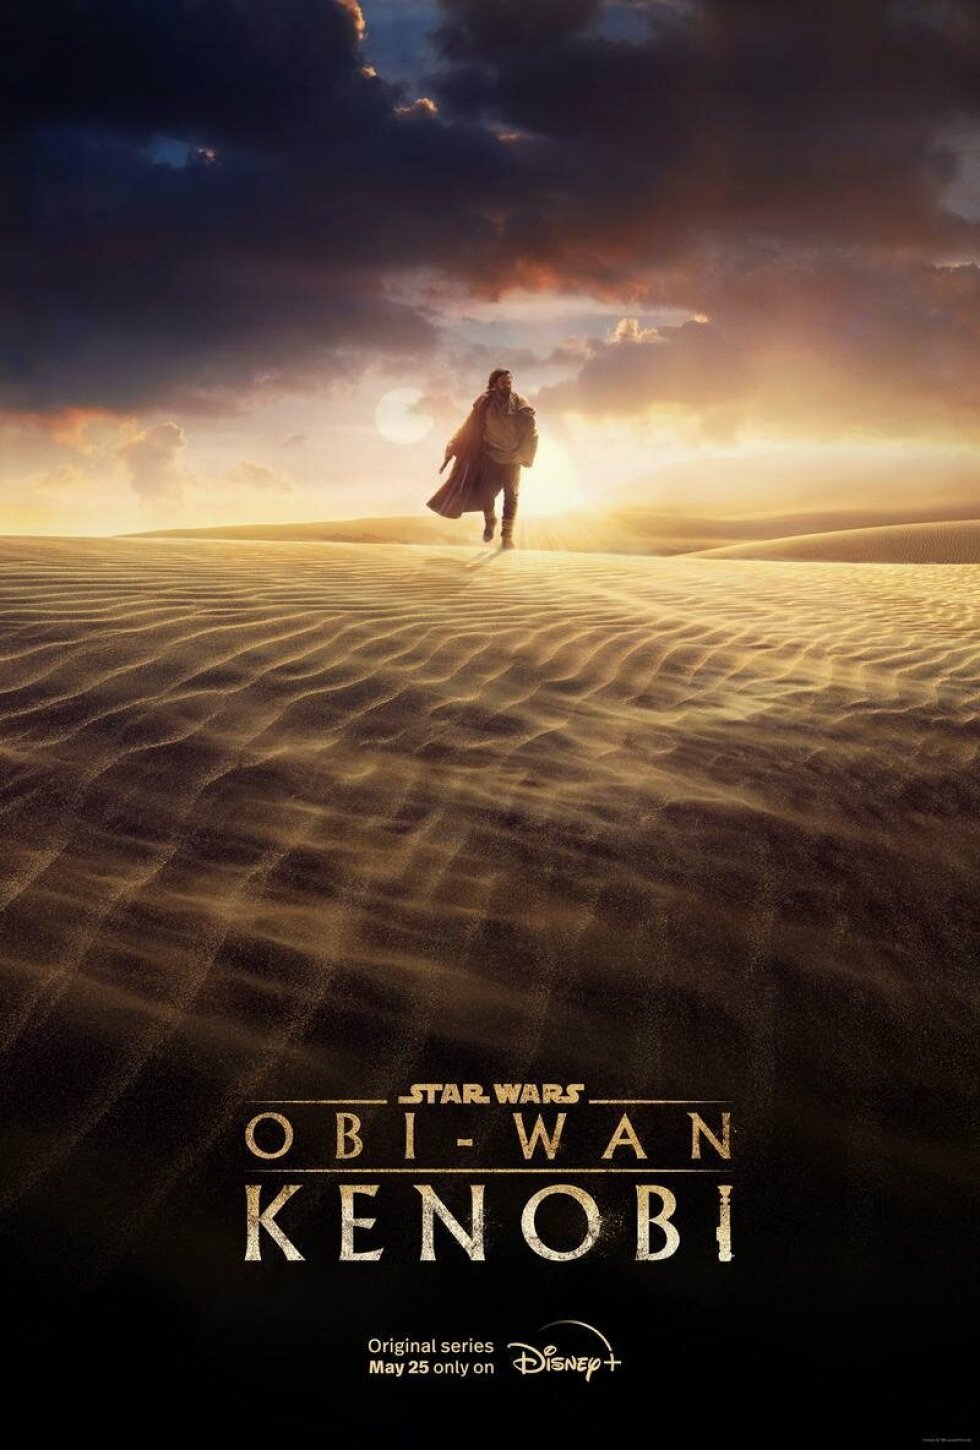 Foto: Disney+ - Obi-Wan-serien har fået officiel premieredato til maj: Se første billede her